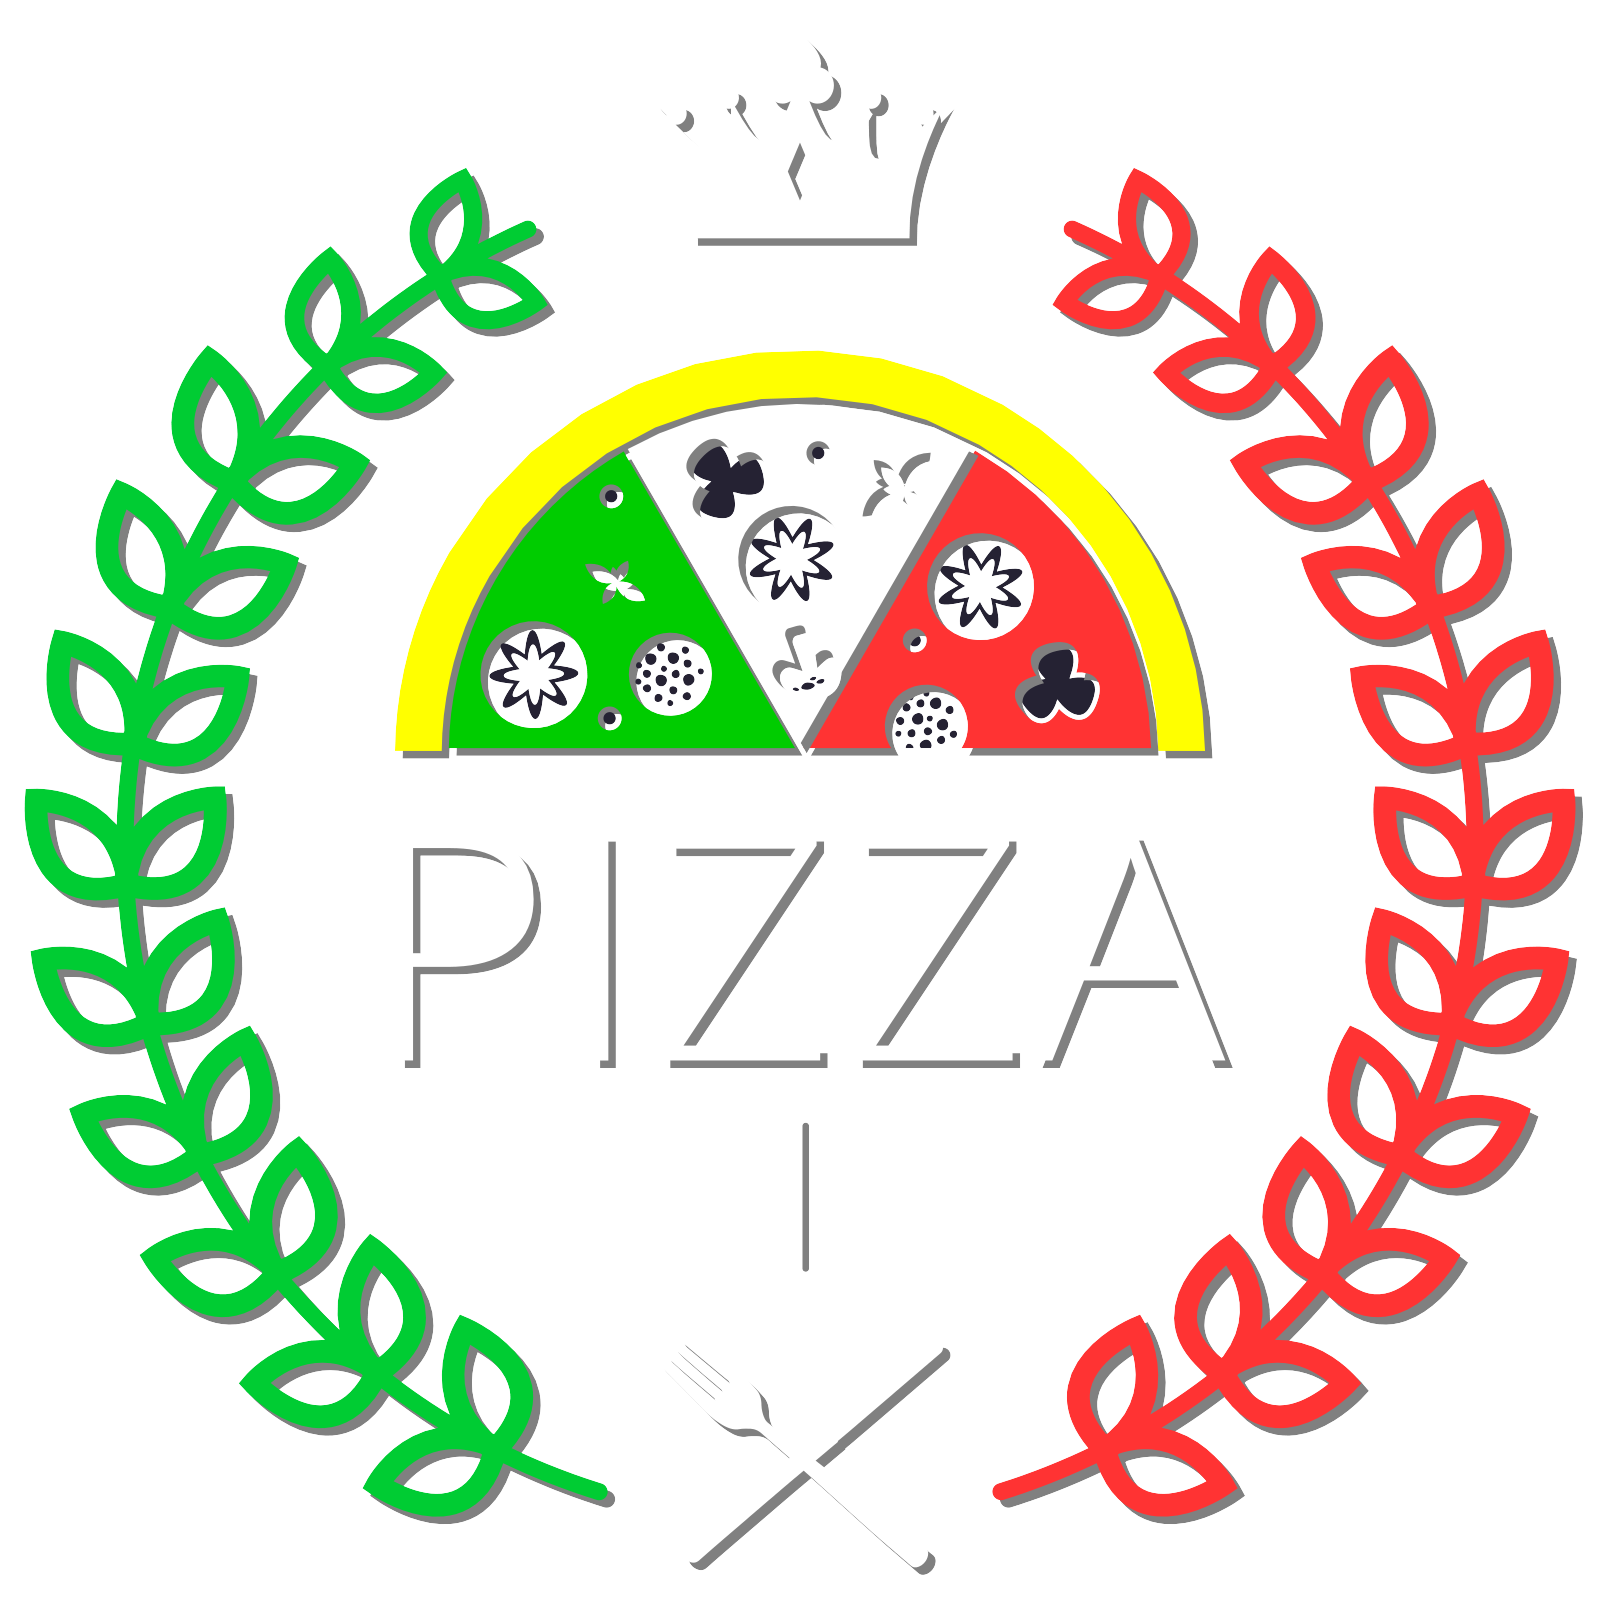 La Pat'zza, Pizza, pizzeria, livraison pizza, pizza à emporter, livraison de Pizzas.